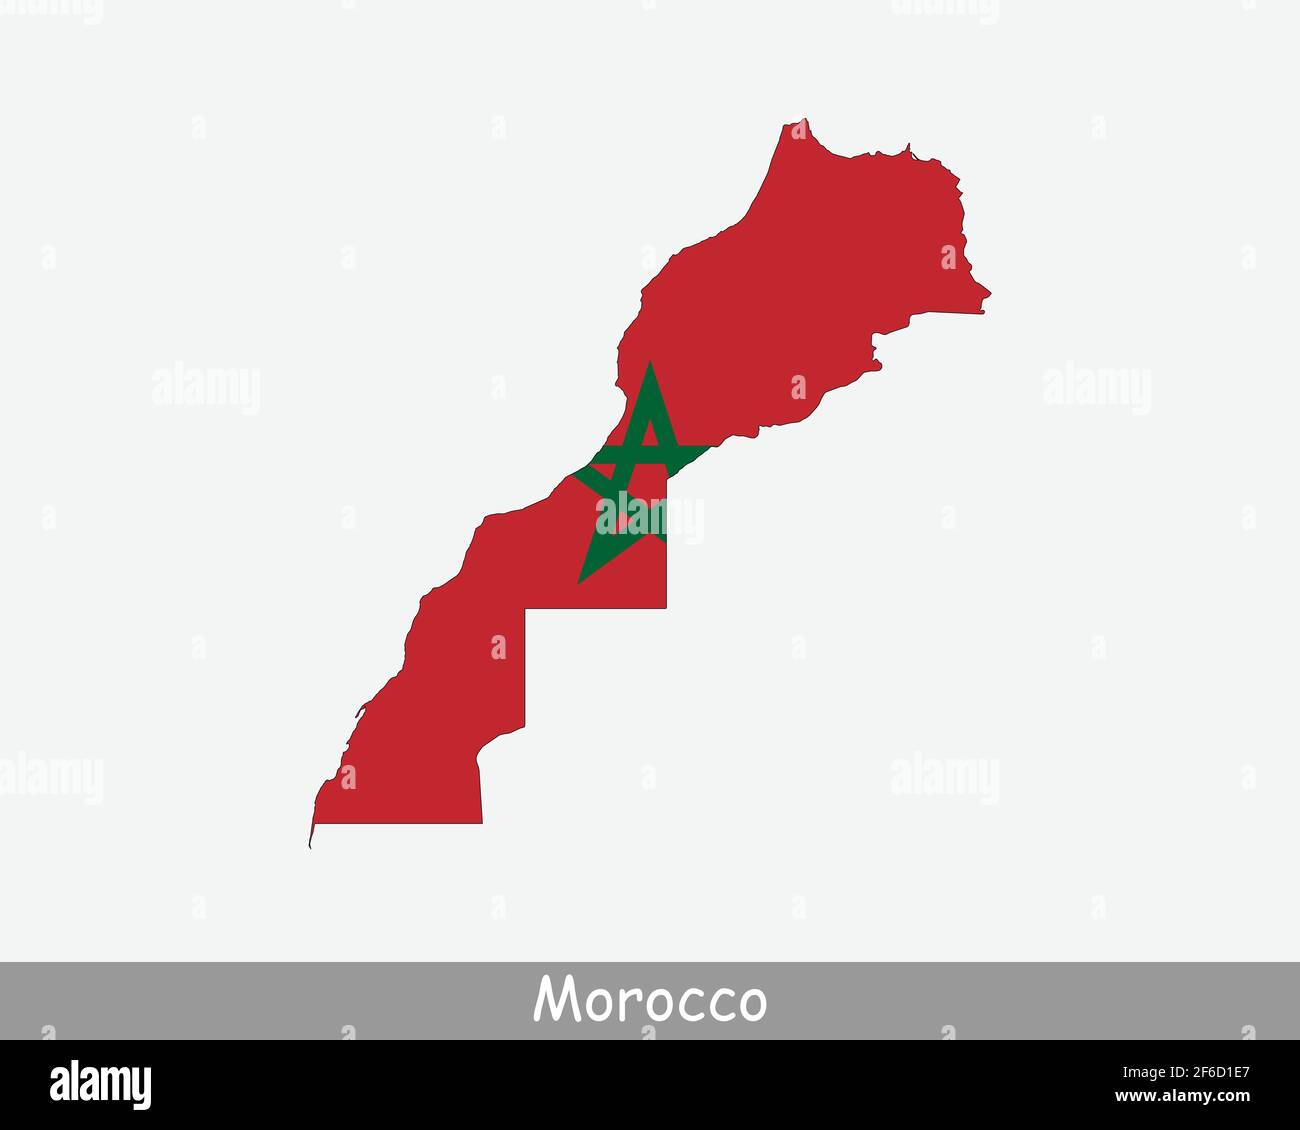 Marokko Flagge Karte. Karte des Königreichs Marokko mit der marokkanischen Nationalflagge isoliert auf weißem Hintergrund. Vektorgrafik. Stock Vektor